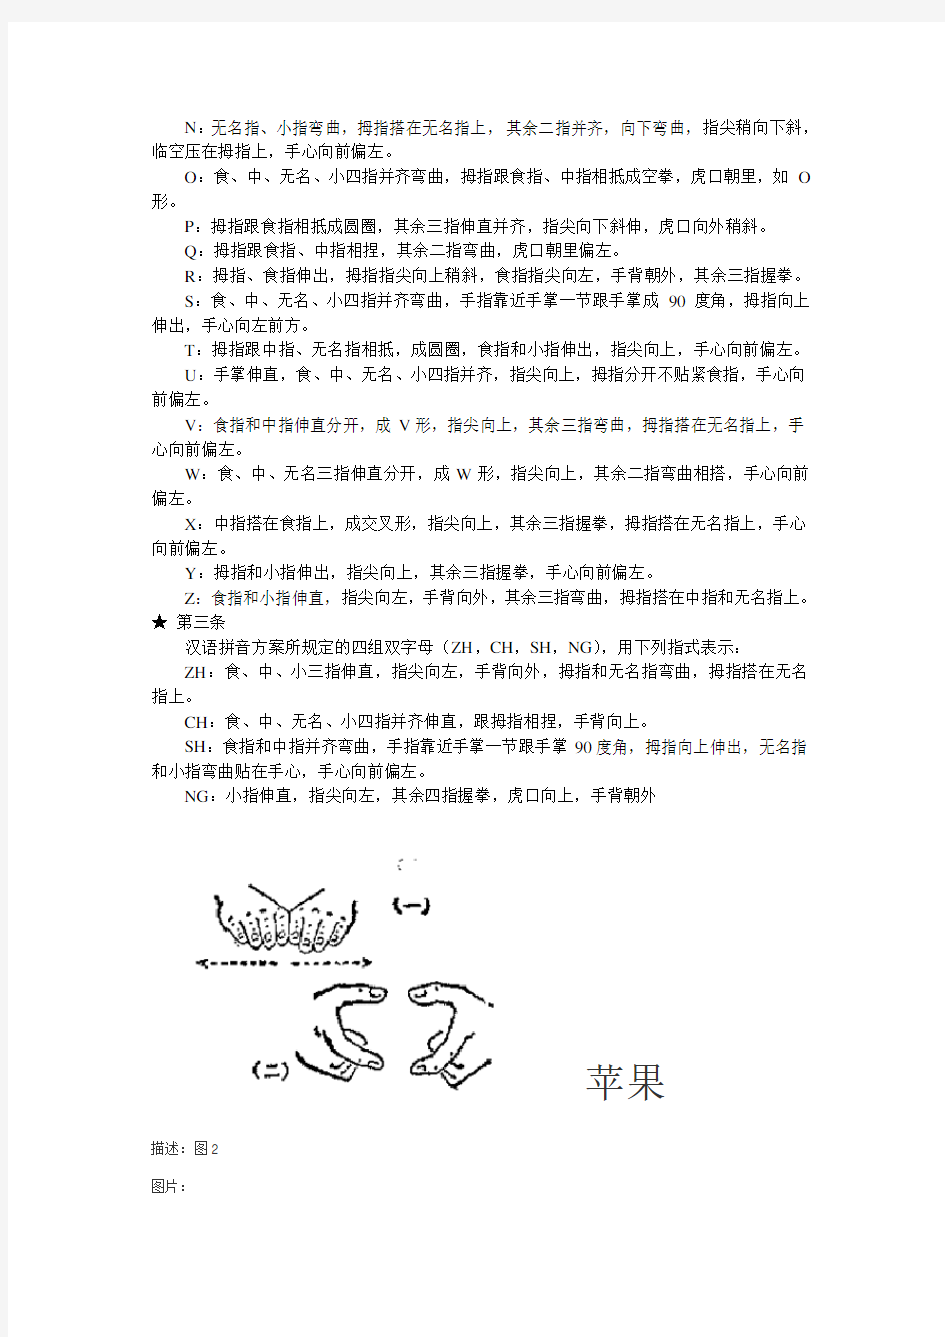 汉语手指字母图资料